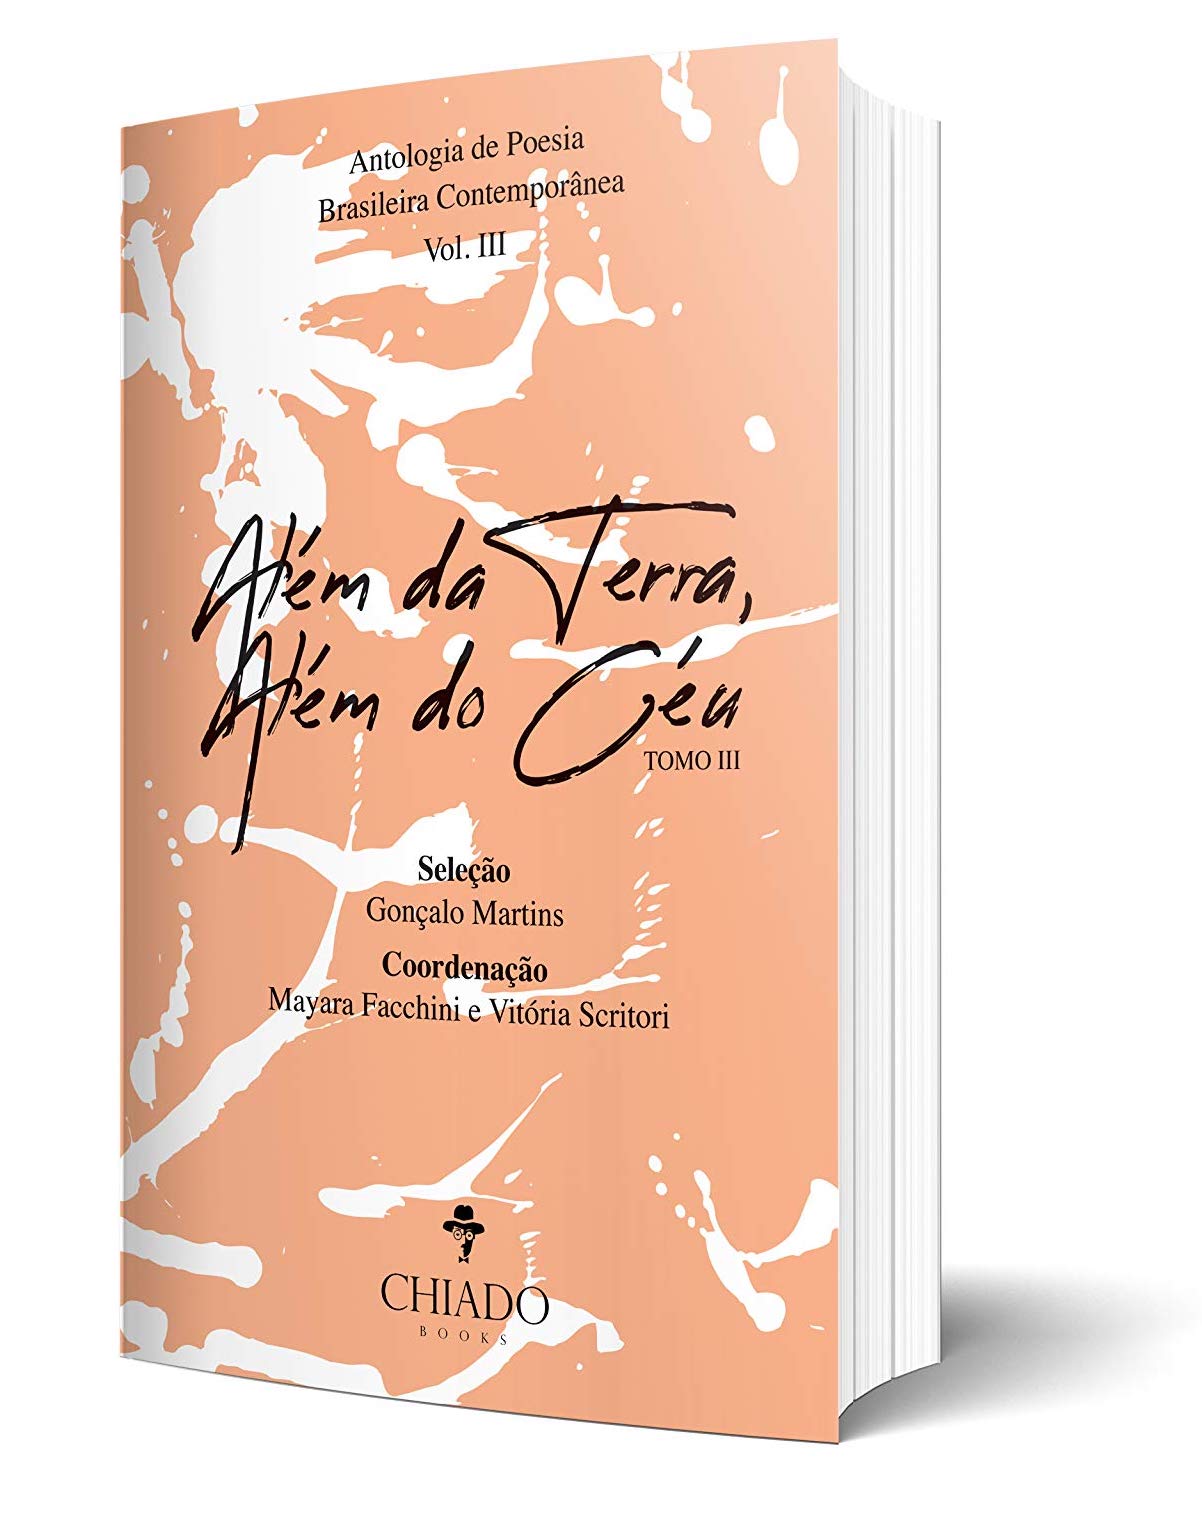 Além da Terra, Além do Céu - Tomo III: Antologia de Poesia Brasileira Contemporânea – Vol. III